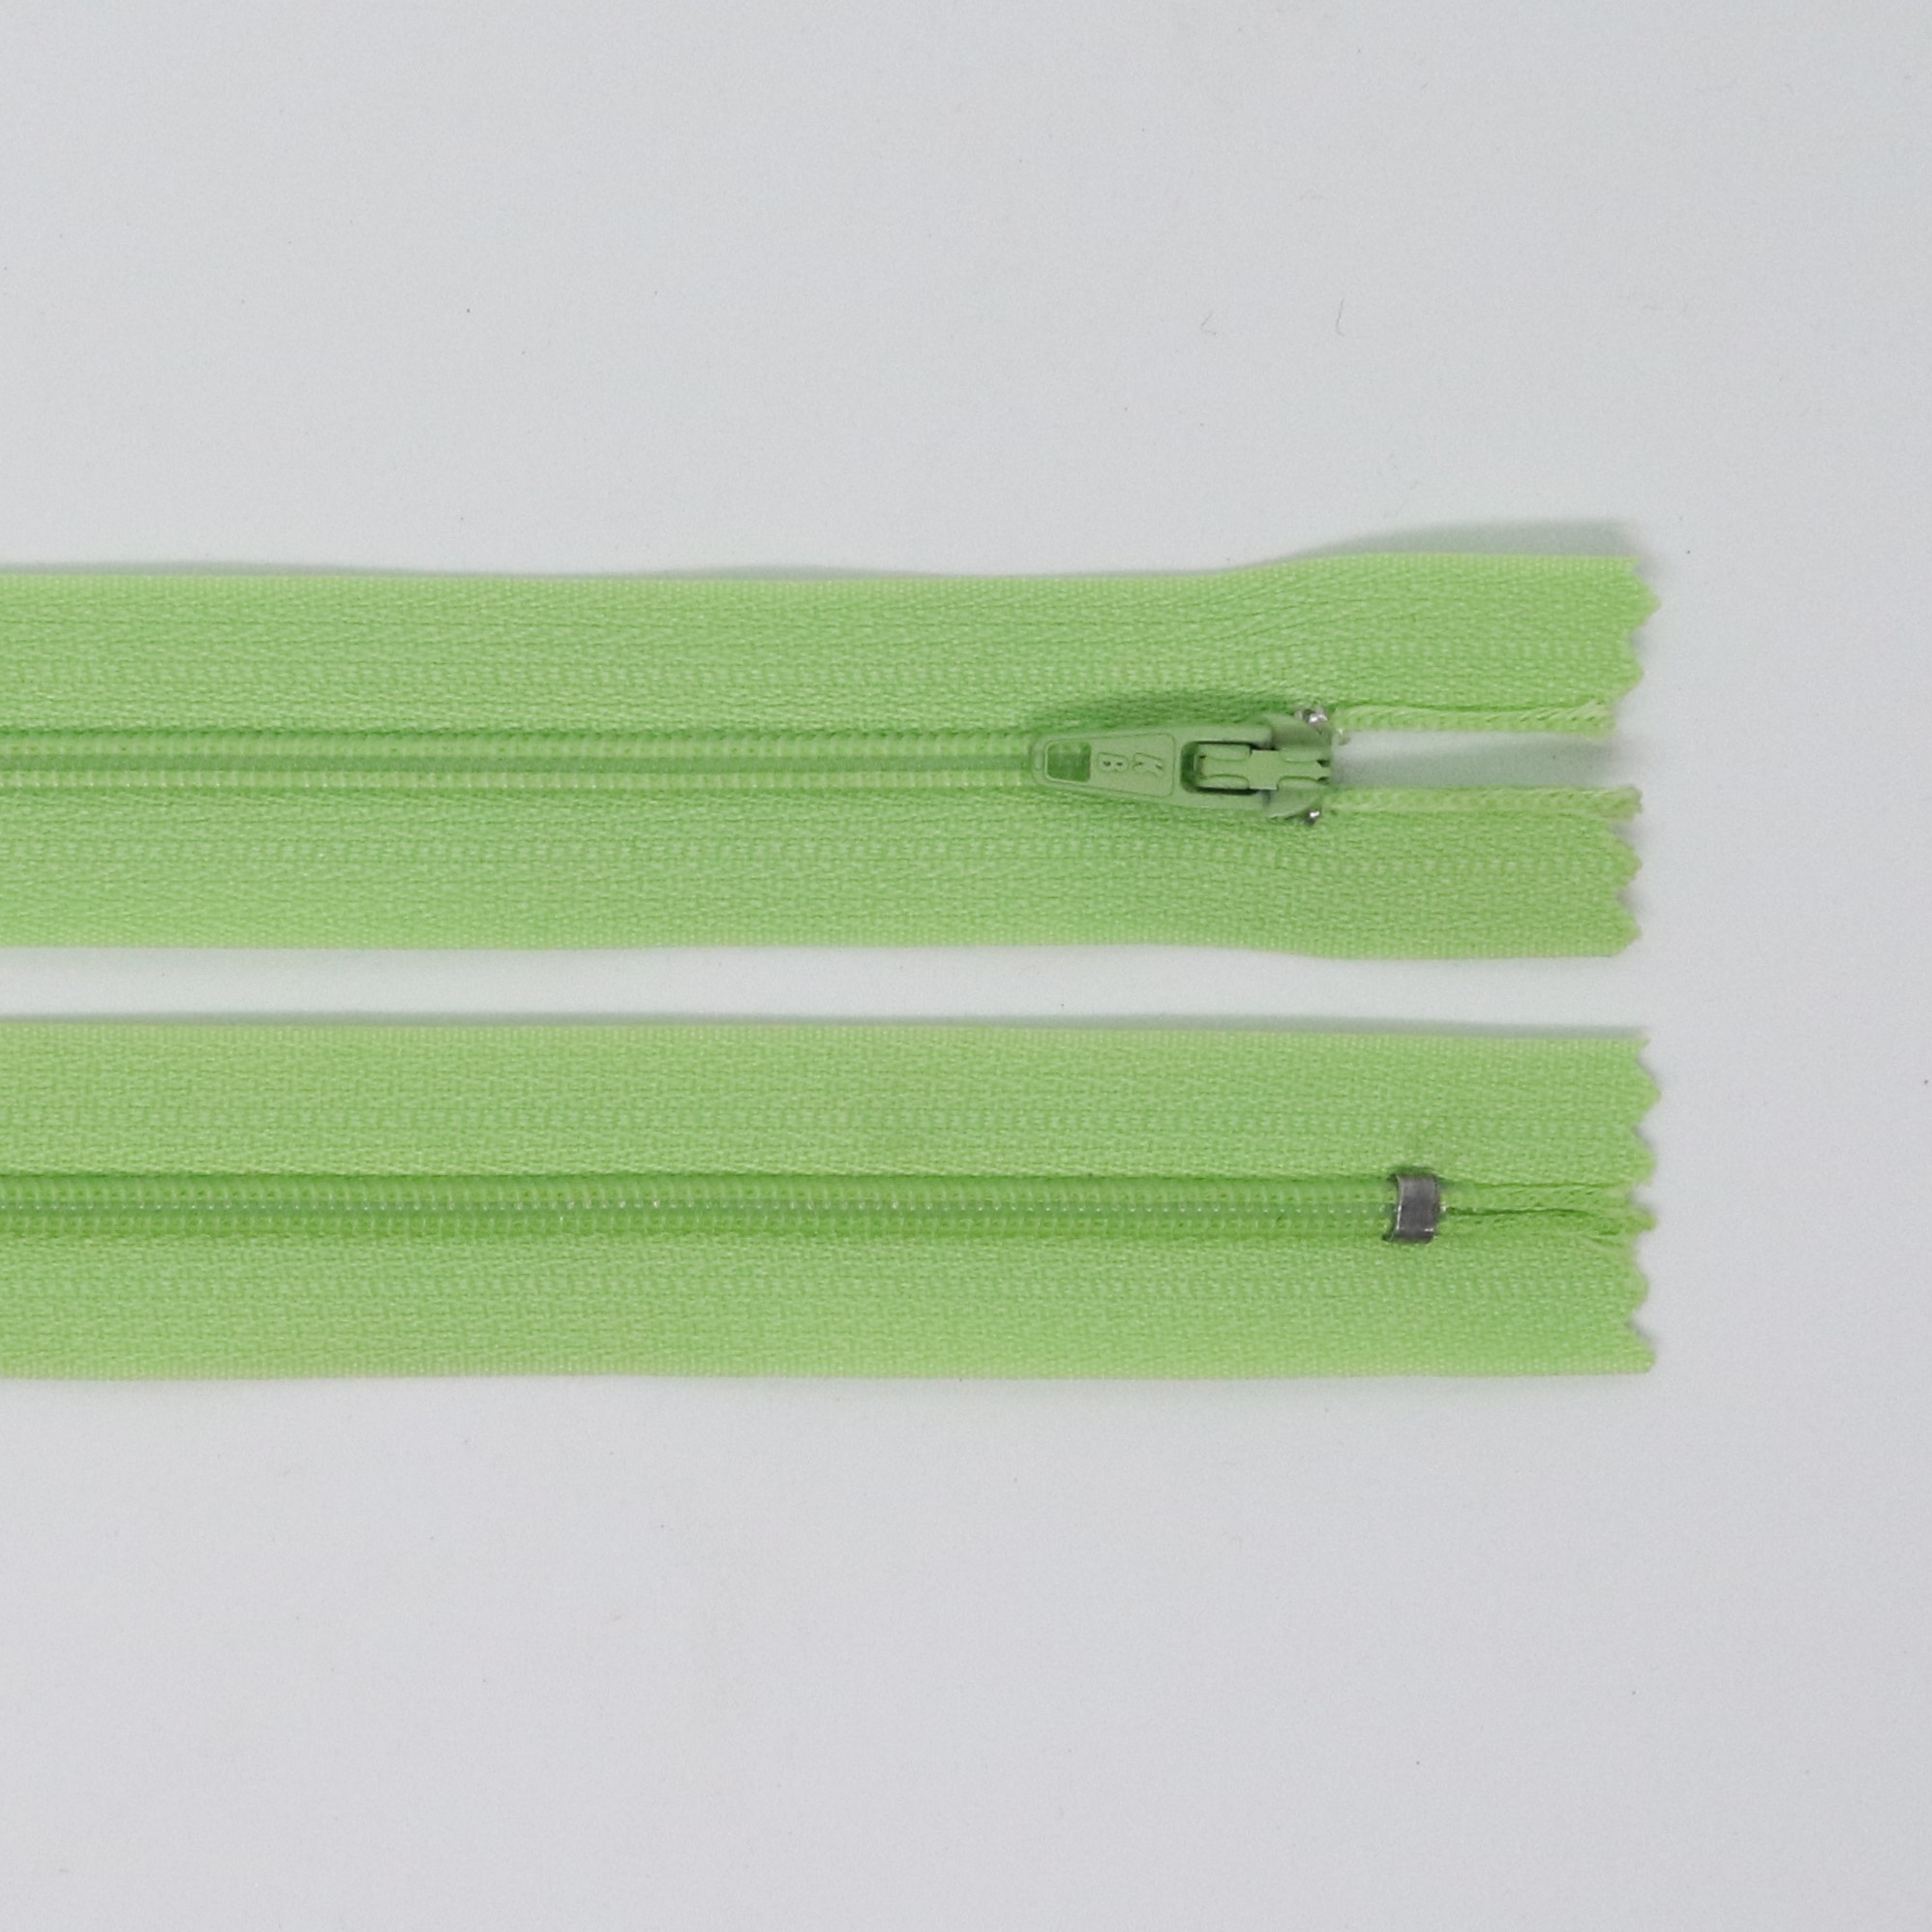 Spirálový zip, šíøe 3 mm, délka 55 cm, svìtle zelená - zvìtšit obrázek